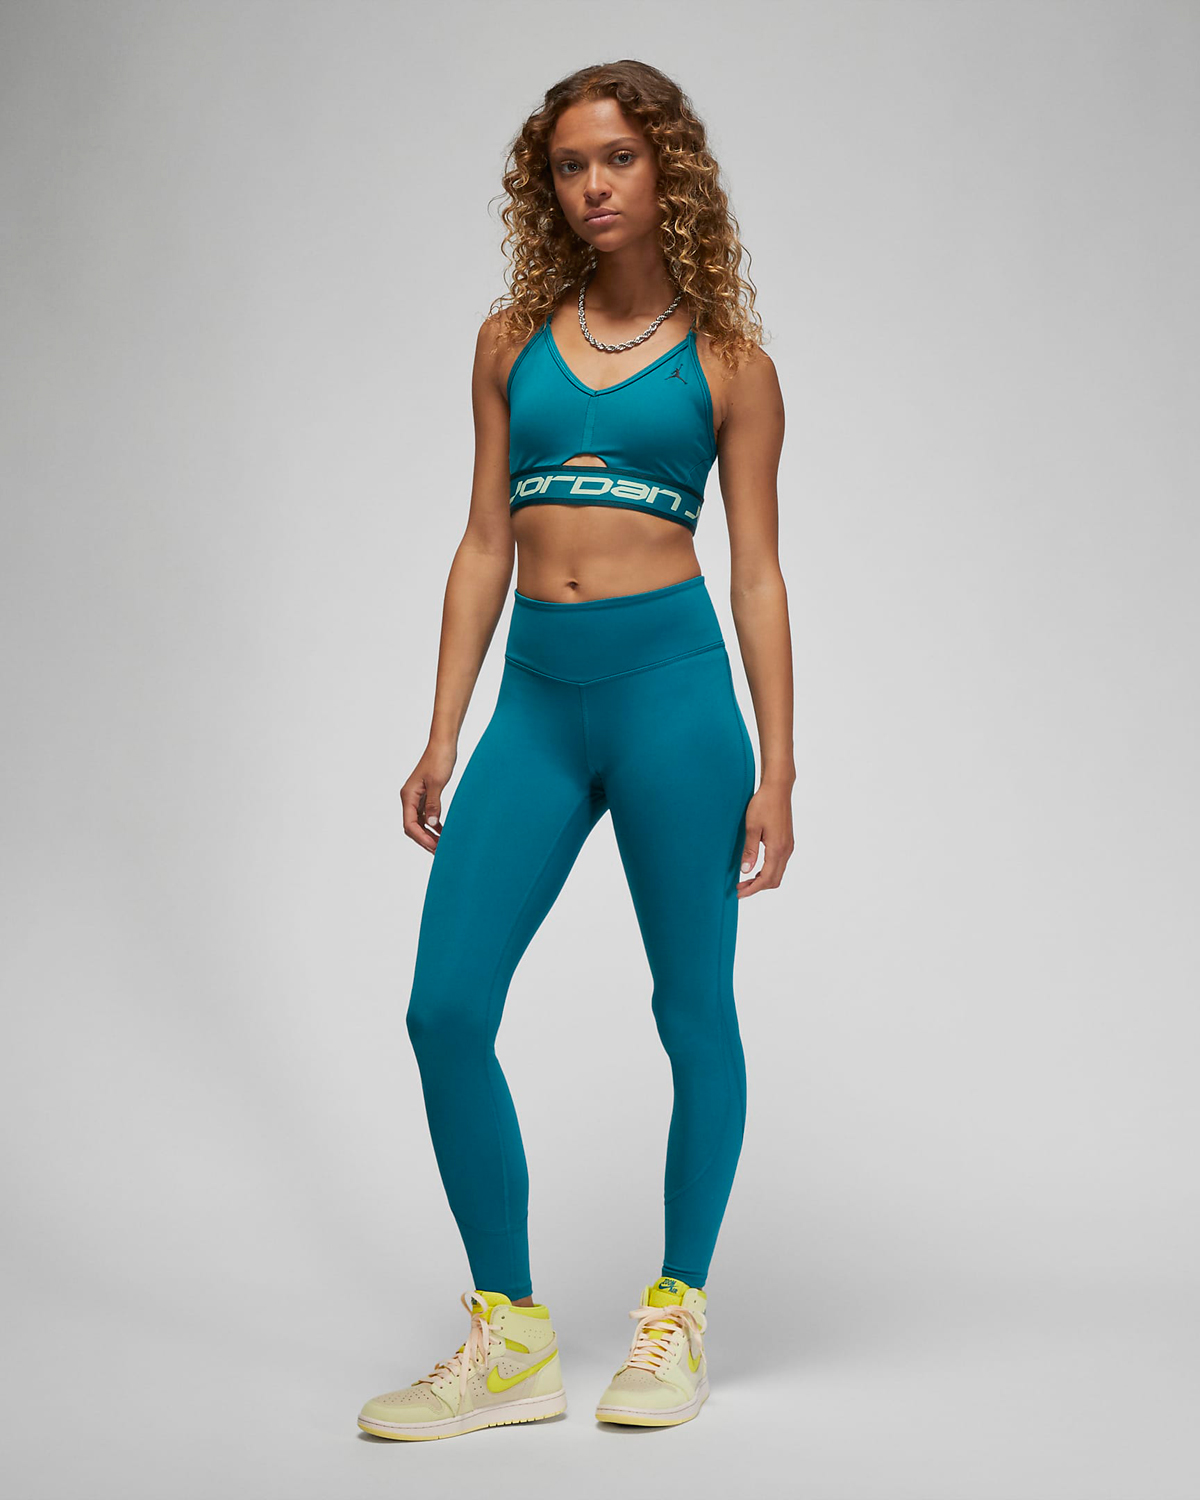 Jordan-Sport-Womens-Leggings-Sky-J-Teal-Outfit